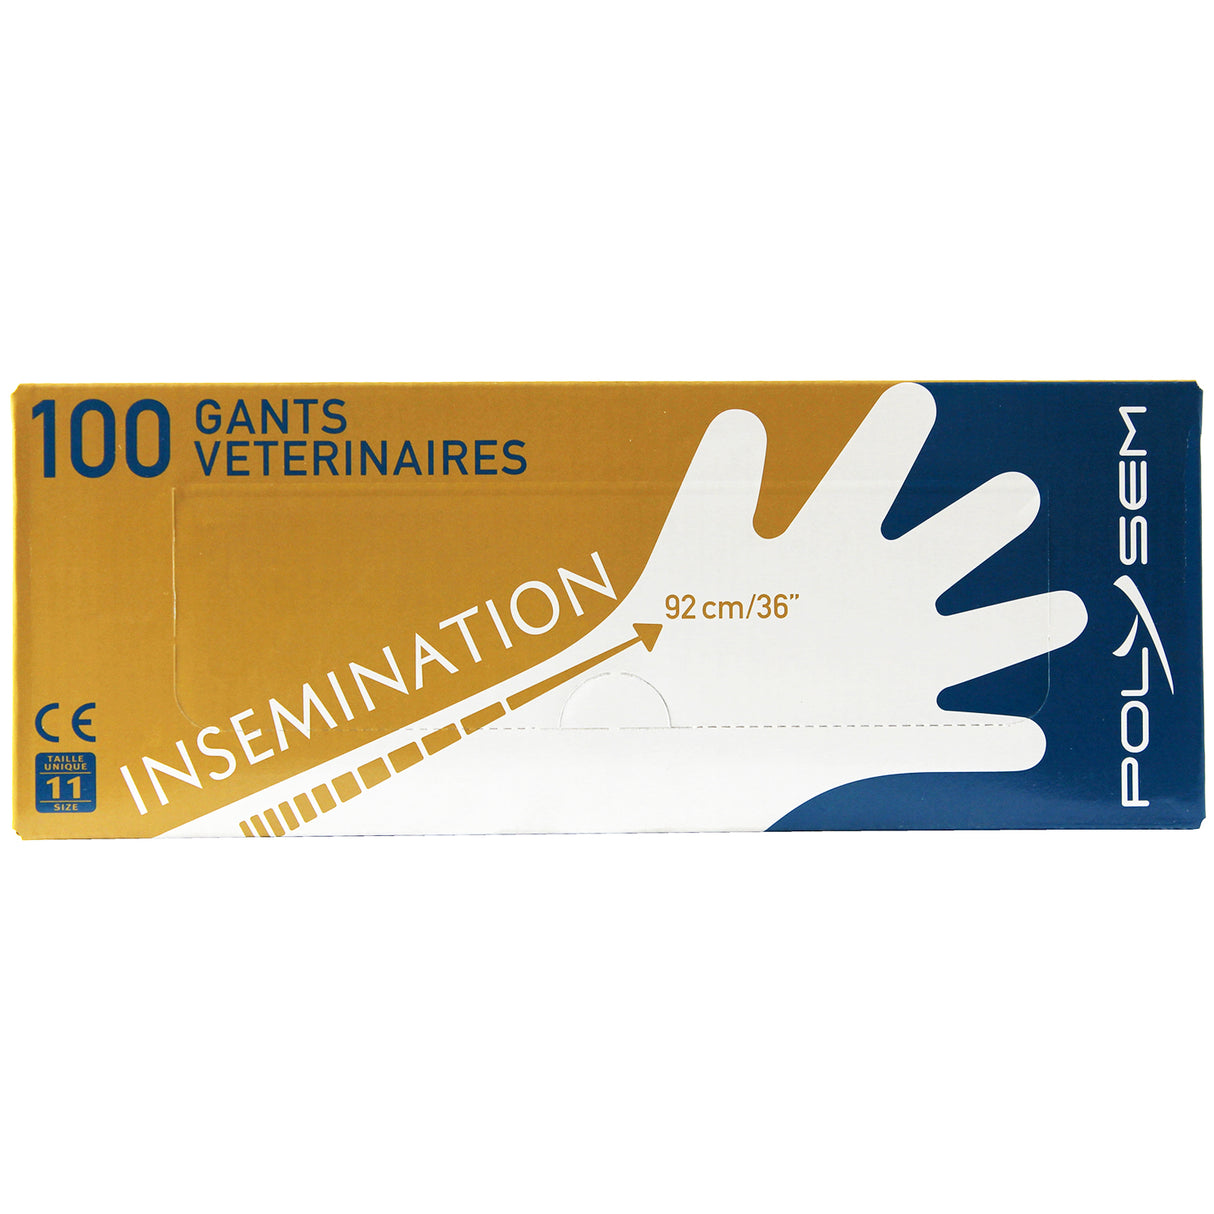 Insemination Gloves 100 pieces